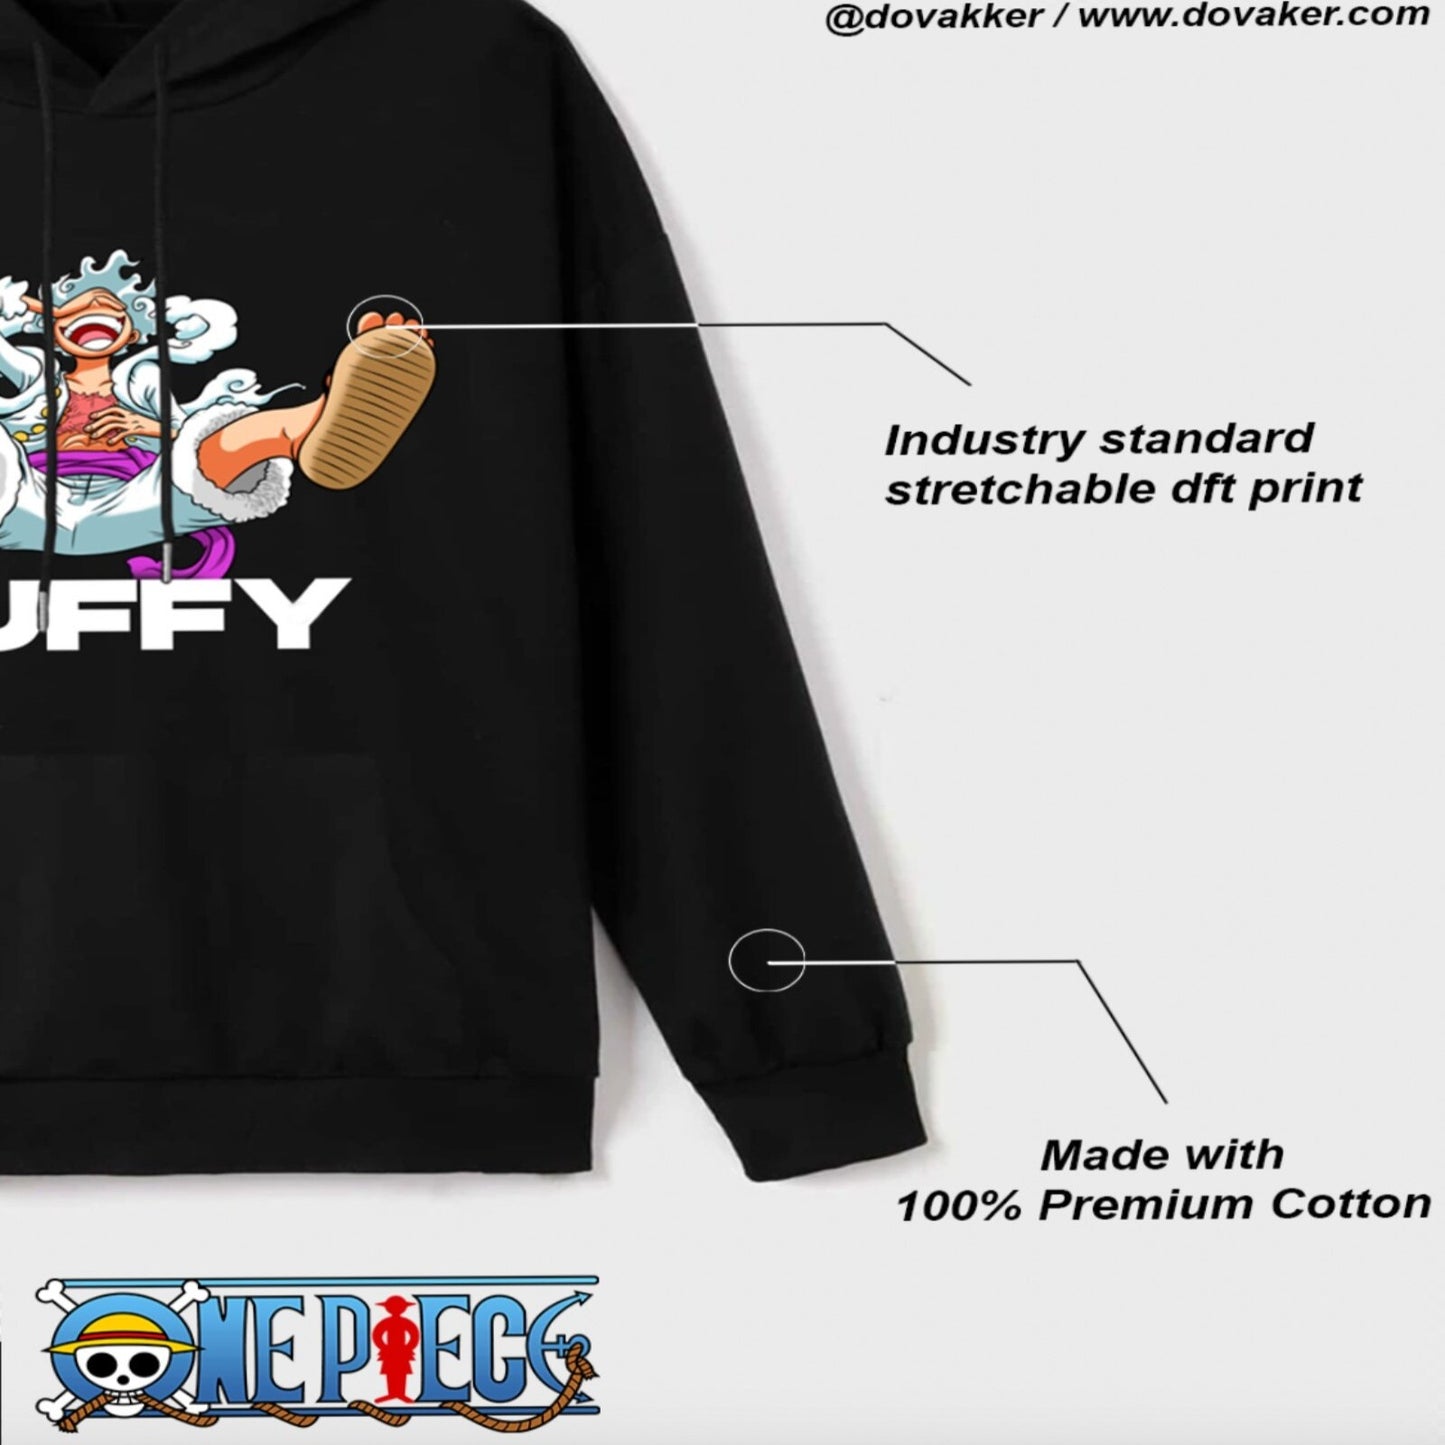 Luffy Gear 5 Premium Cotton Hoodie (Unisex)